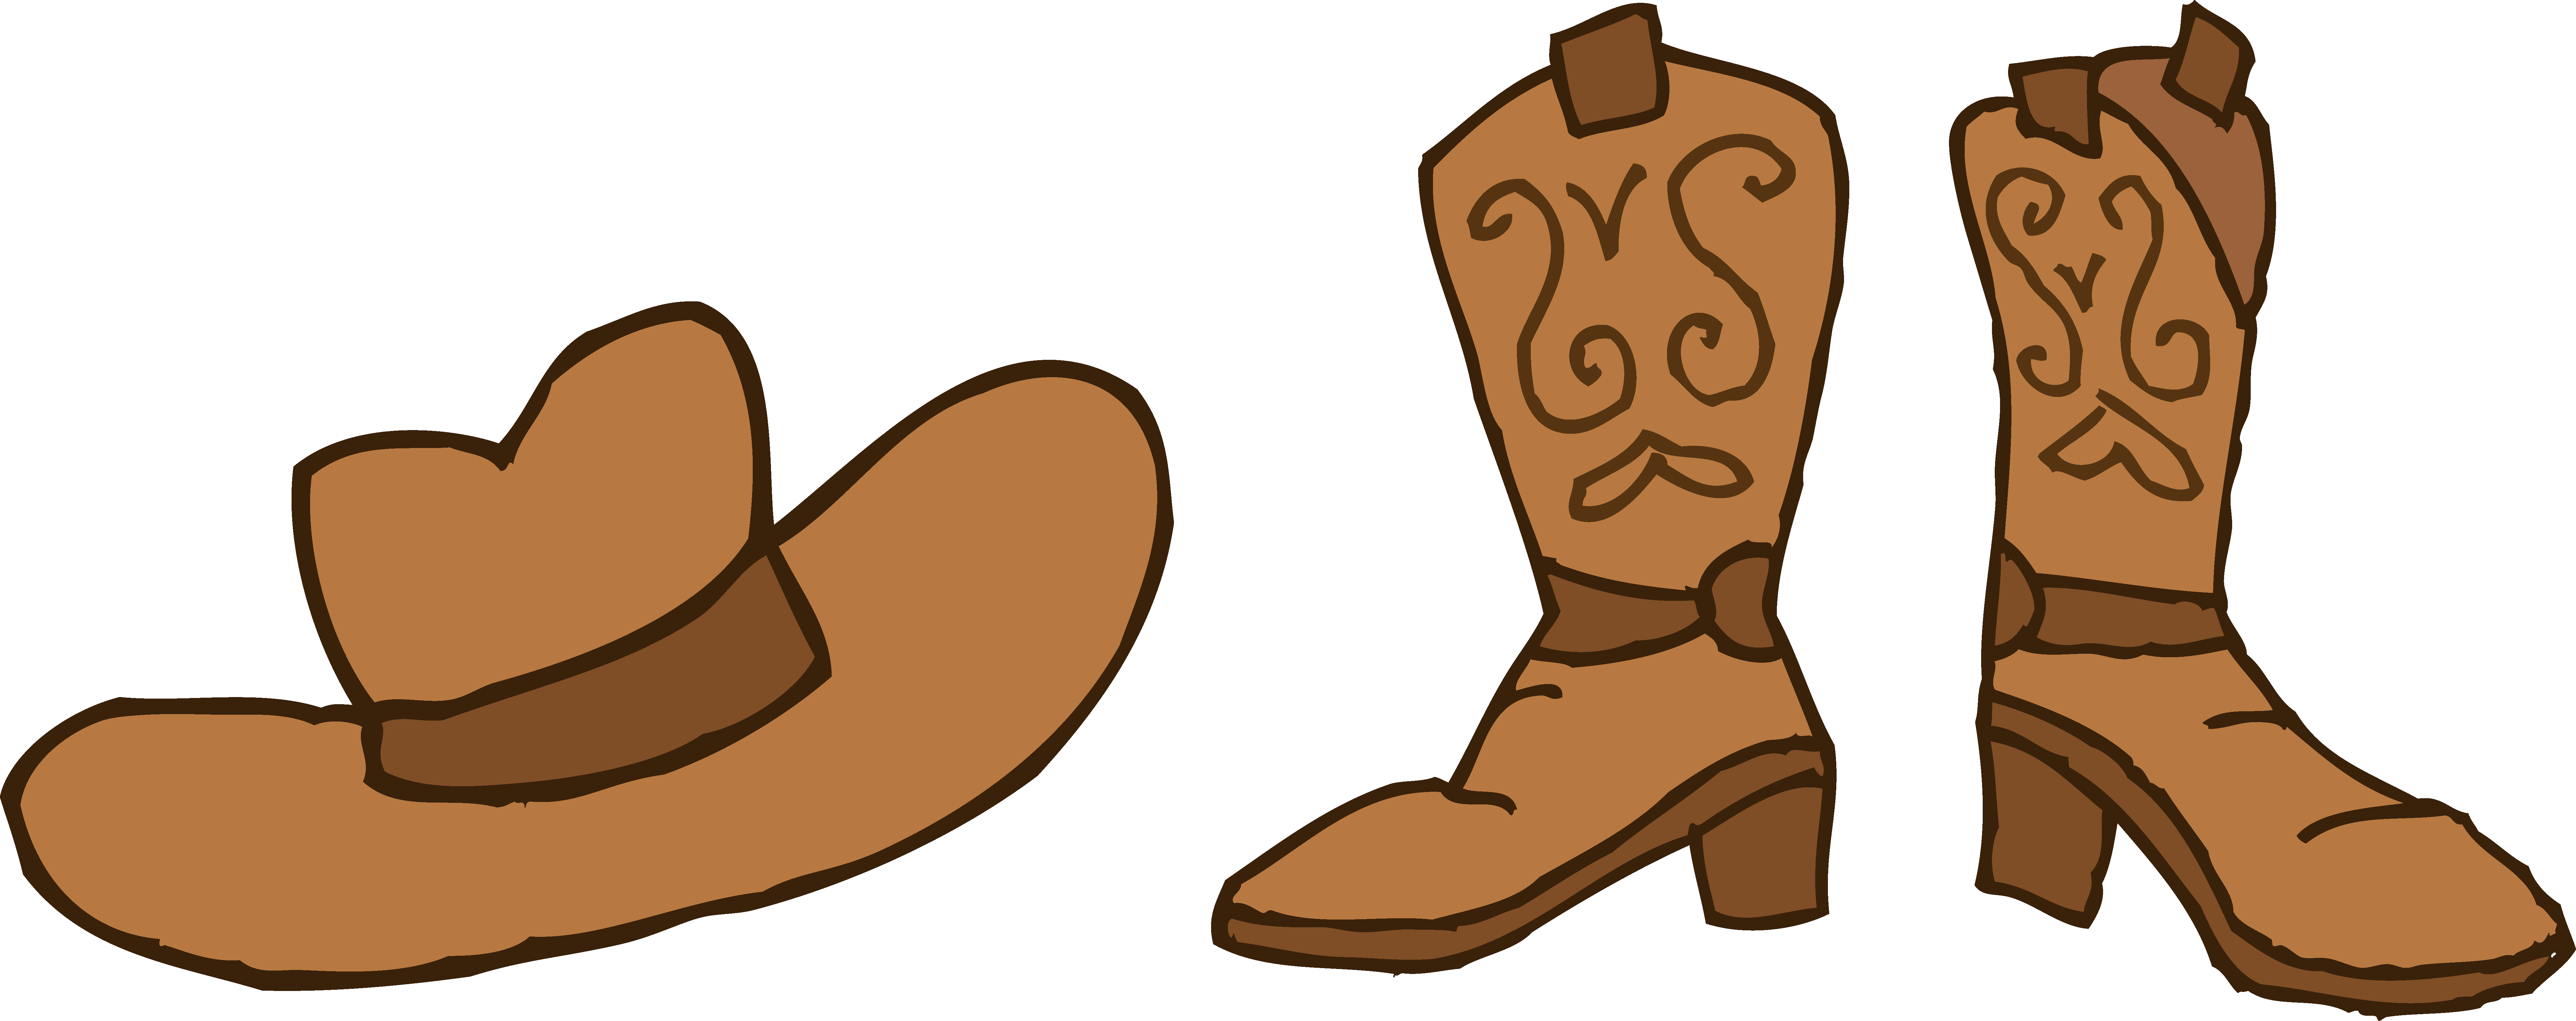 Cartoon cowboy boots clipart - ClipartFox